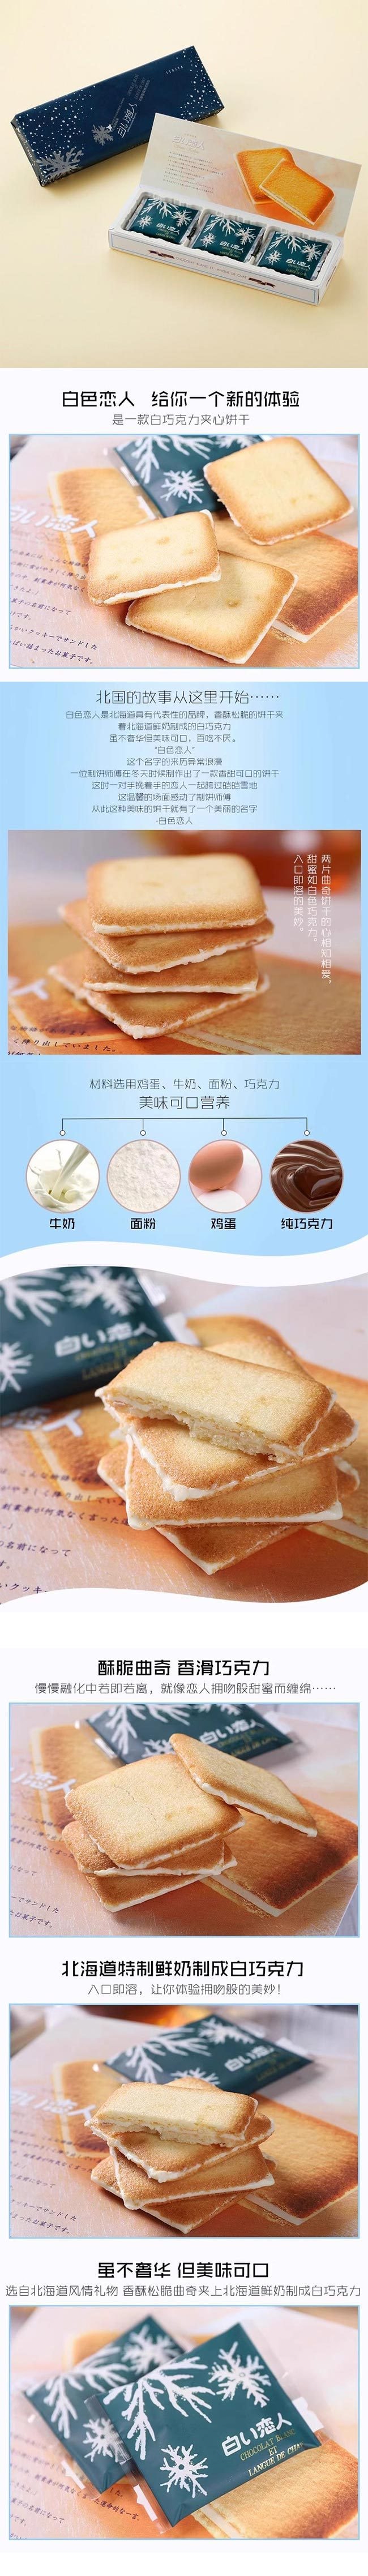 【日本直邮】北海道名产 石屋制菓 白色恋人 白巧克力饼干 9枚入